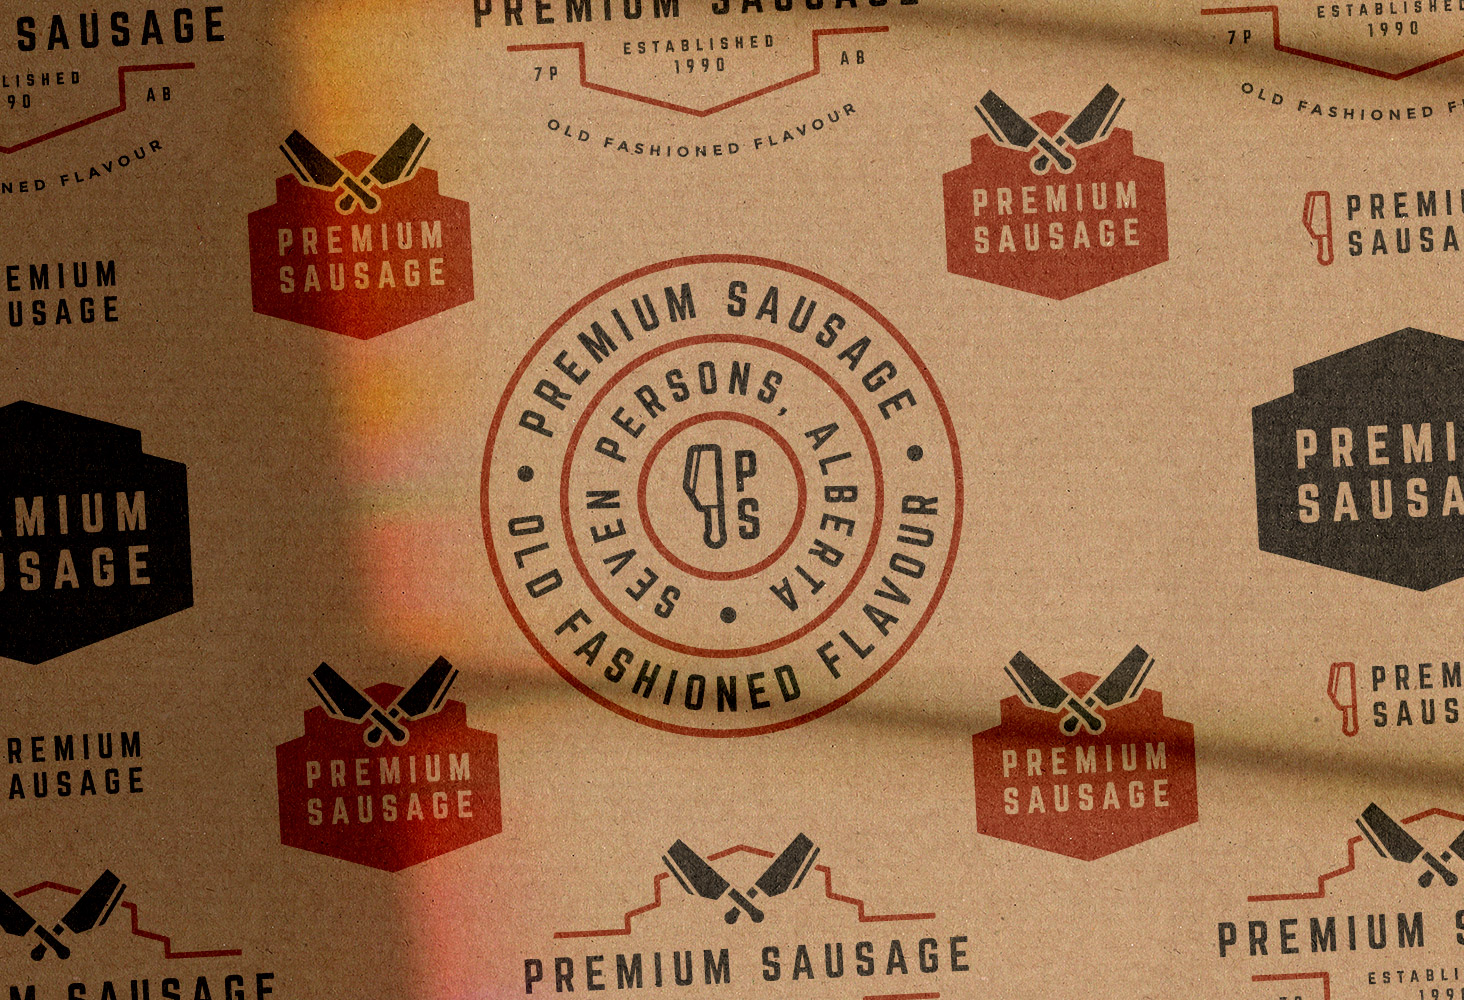 Premium Sausage